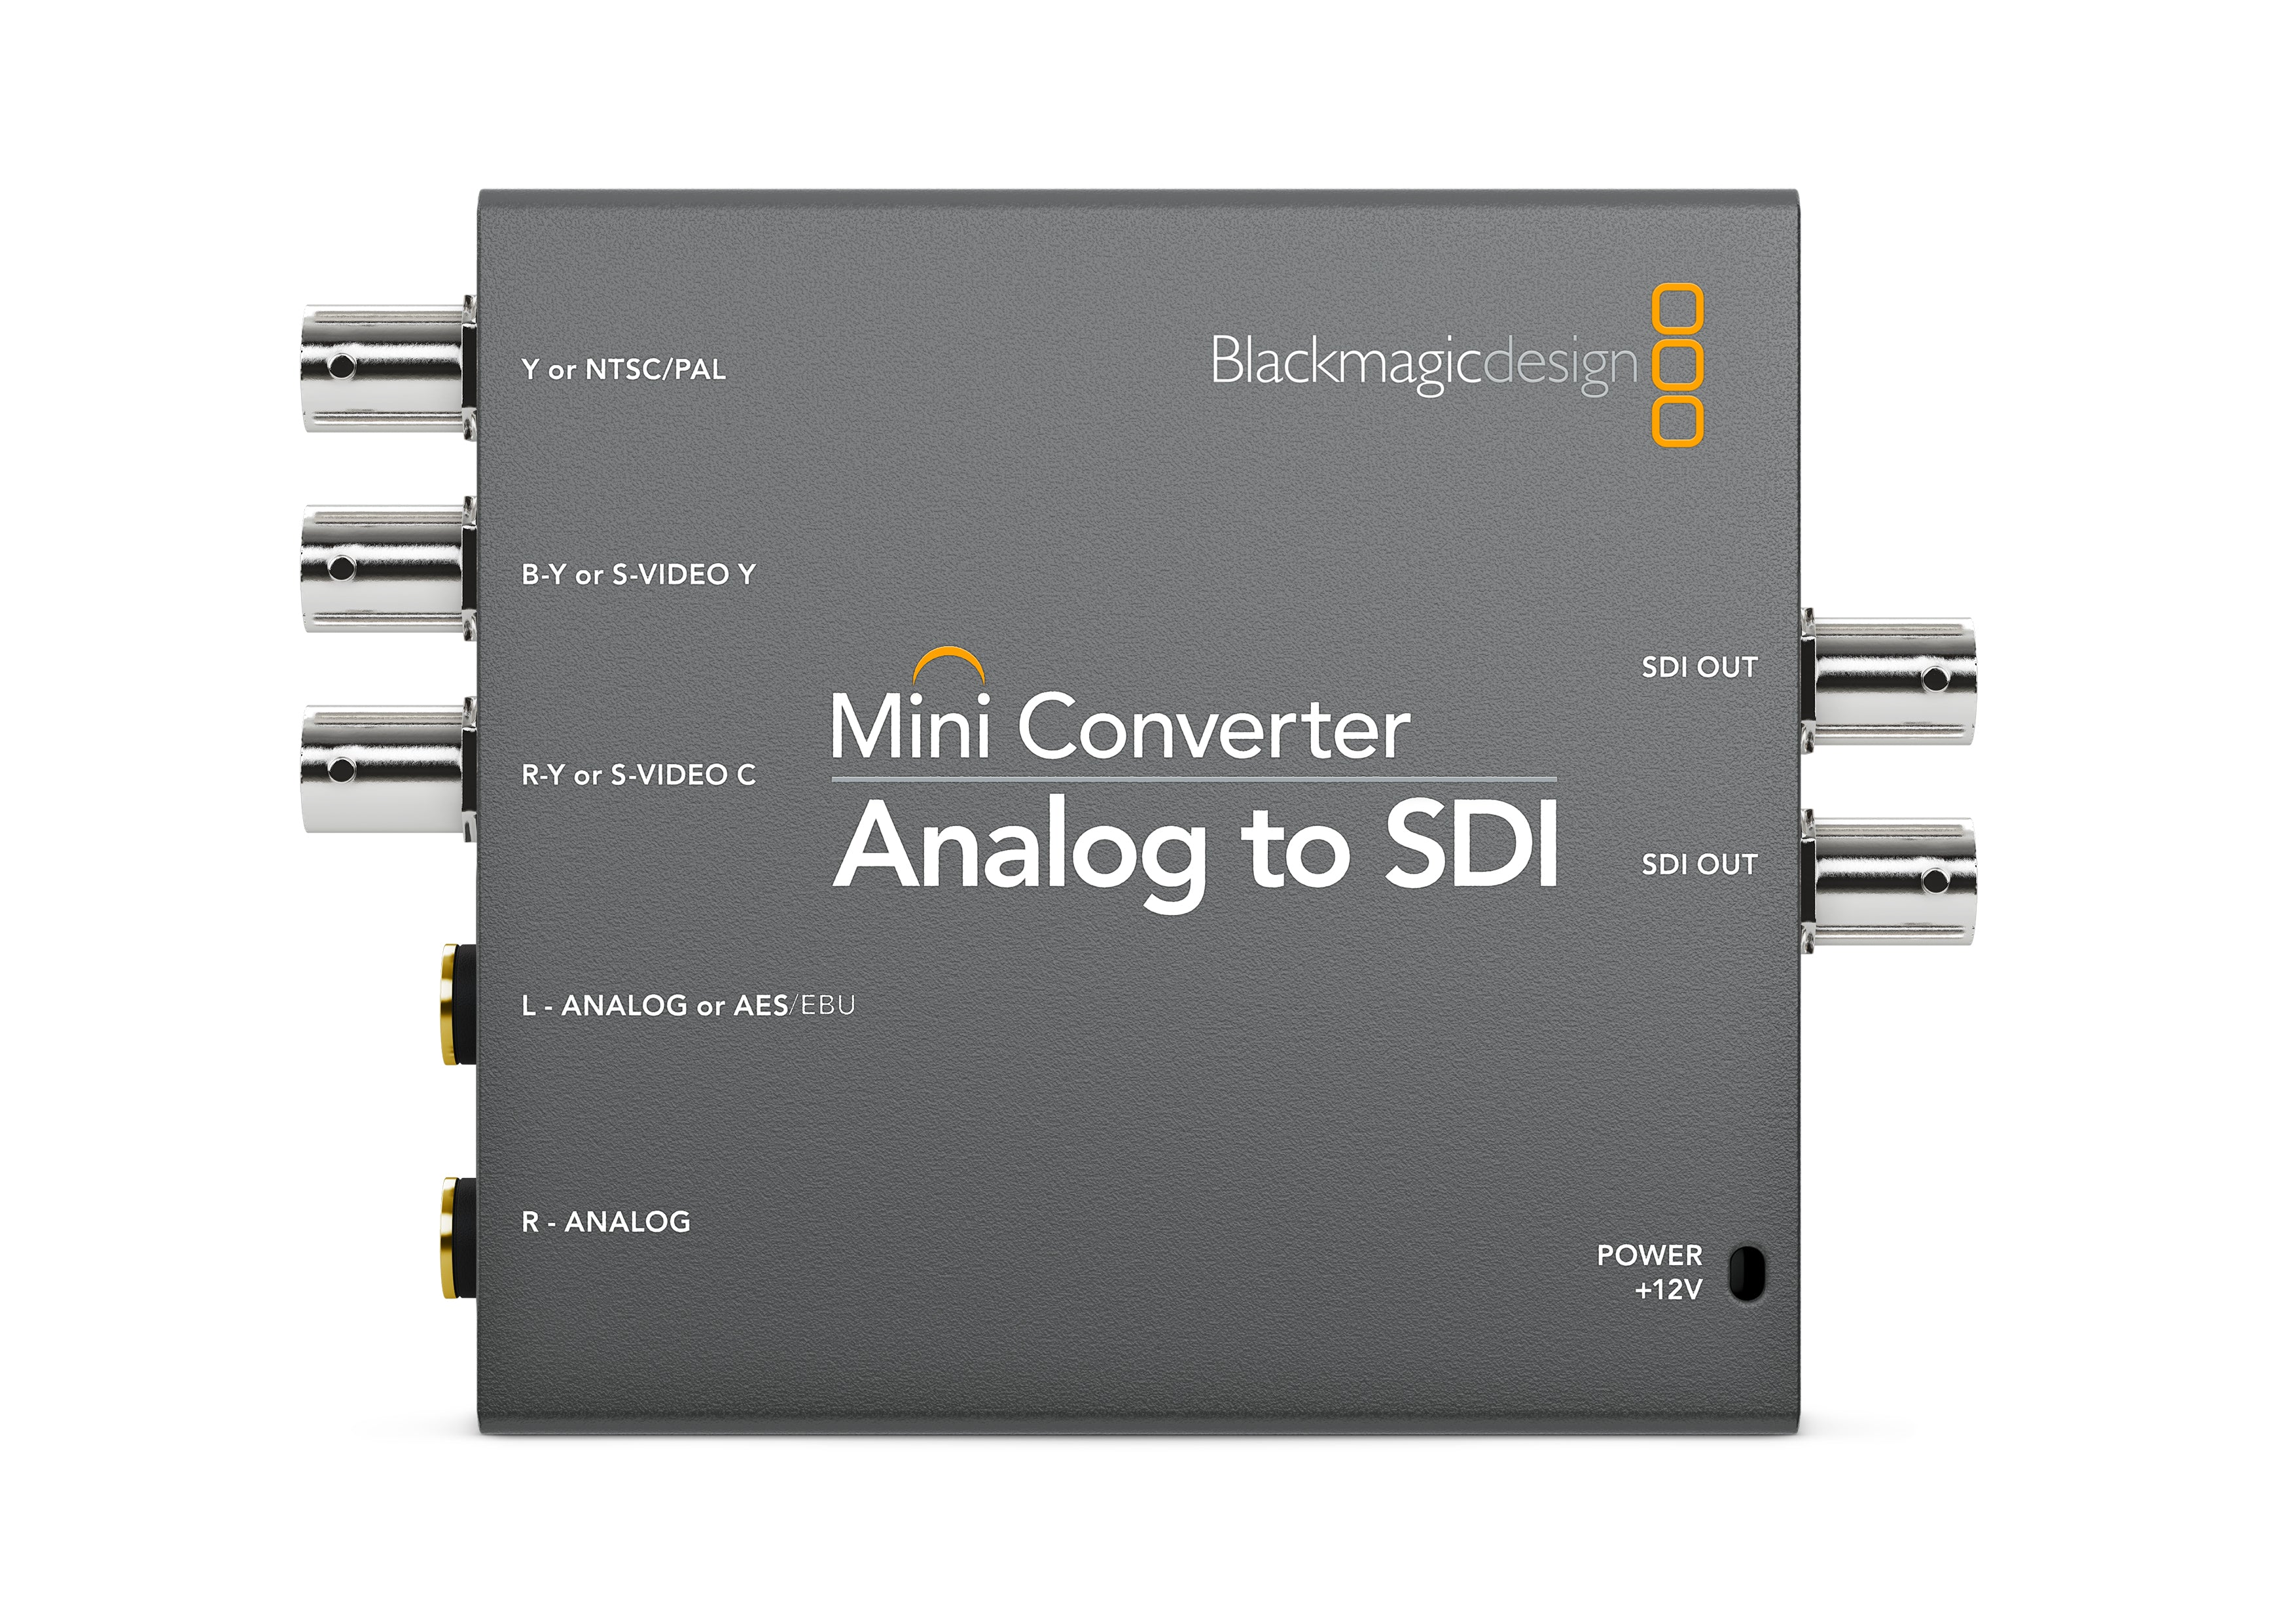 Mini Converter Analog to SDI